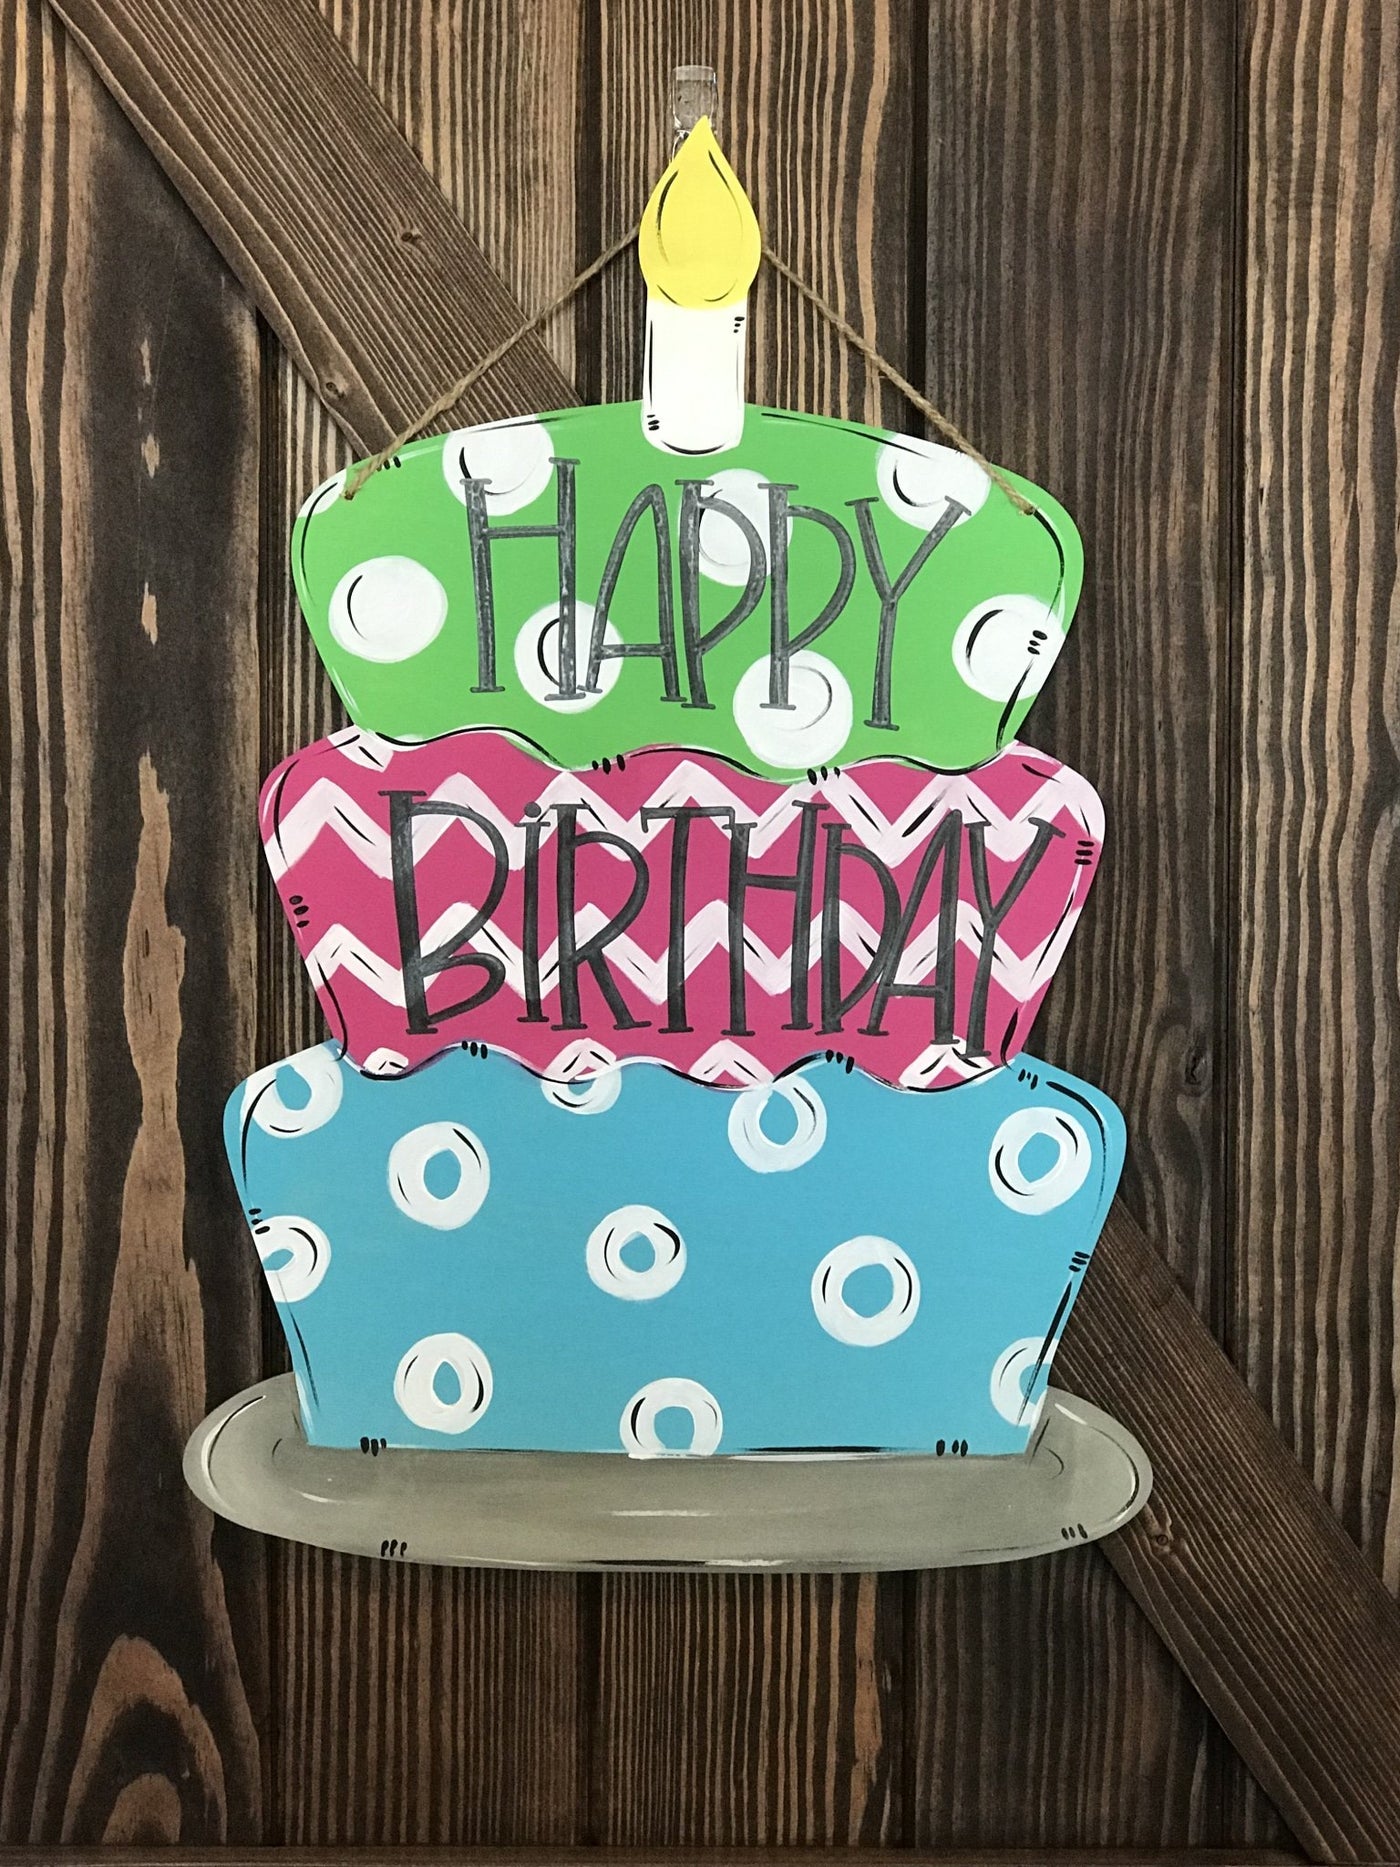 7/13/19 Door Hanger Workshop @ 1:00Pm Birthday Cake